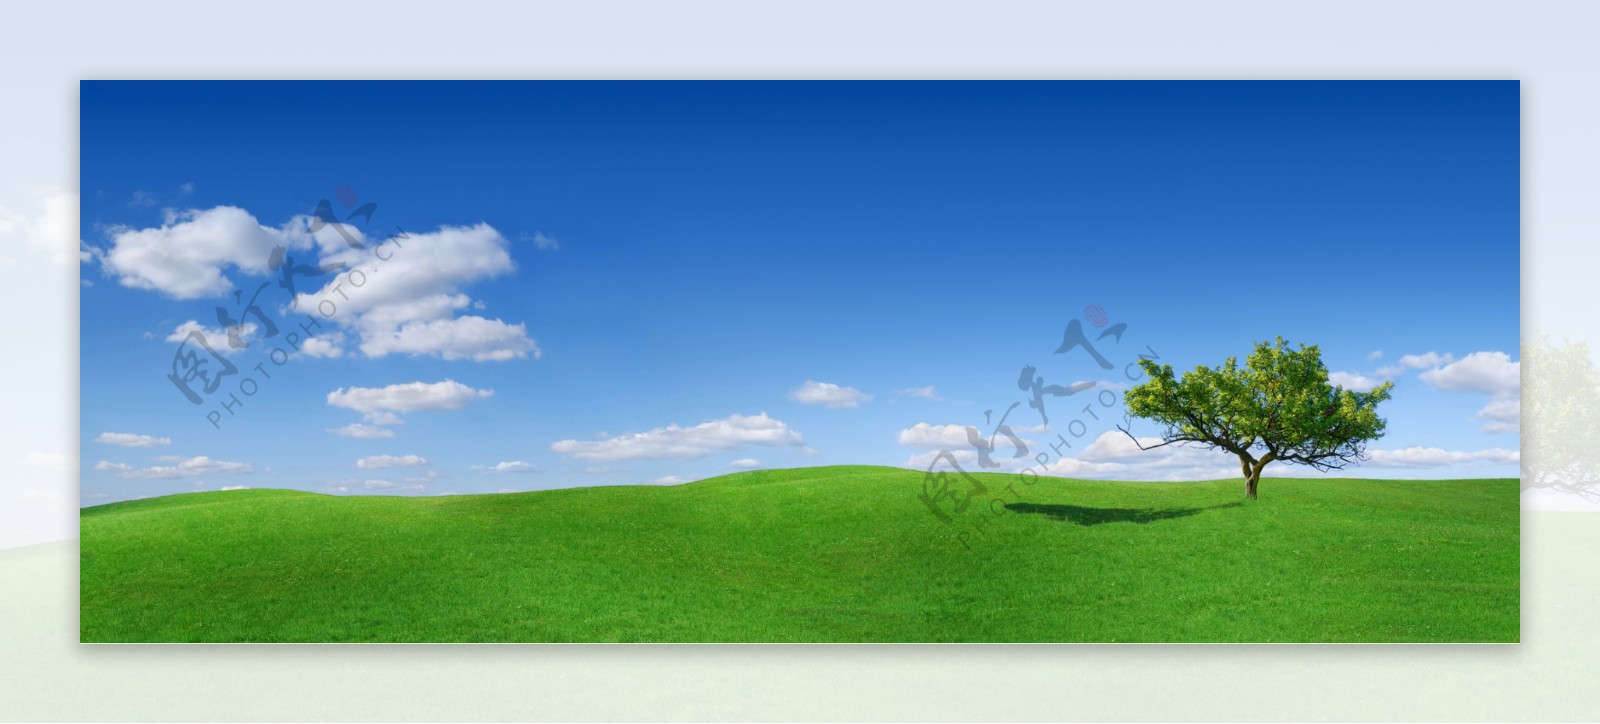 蓝天白云与草原景色图片